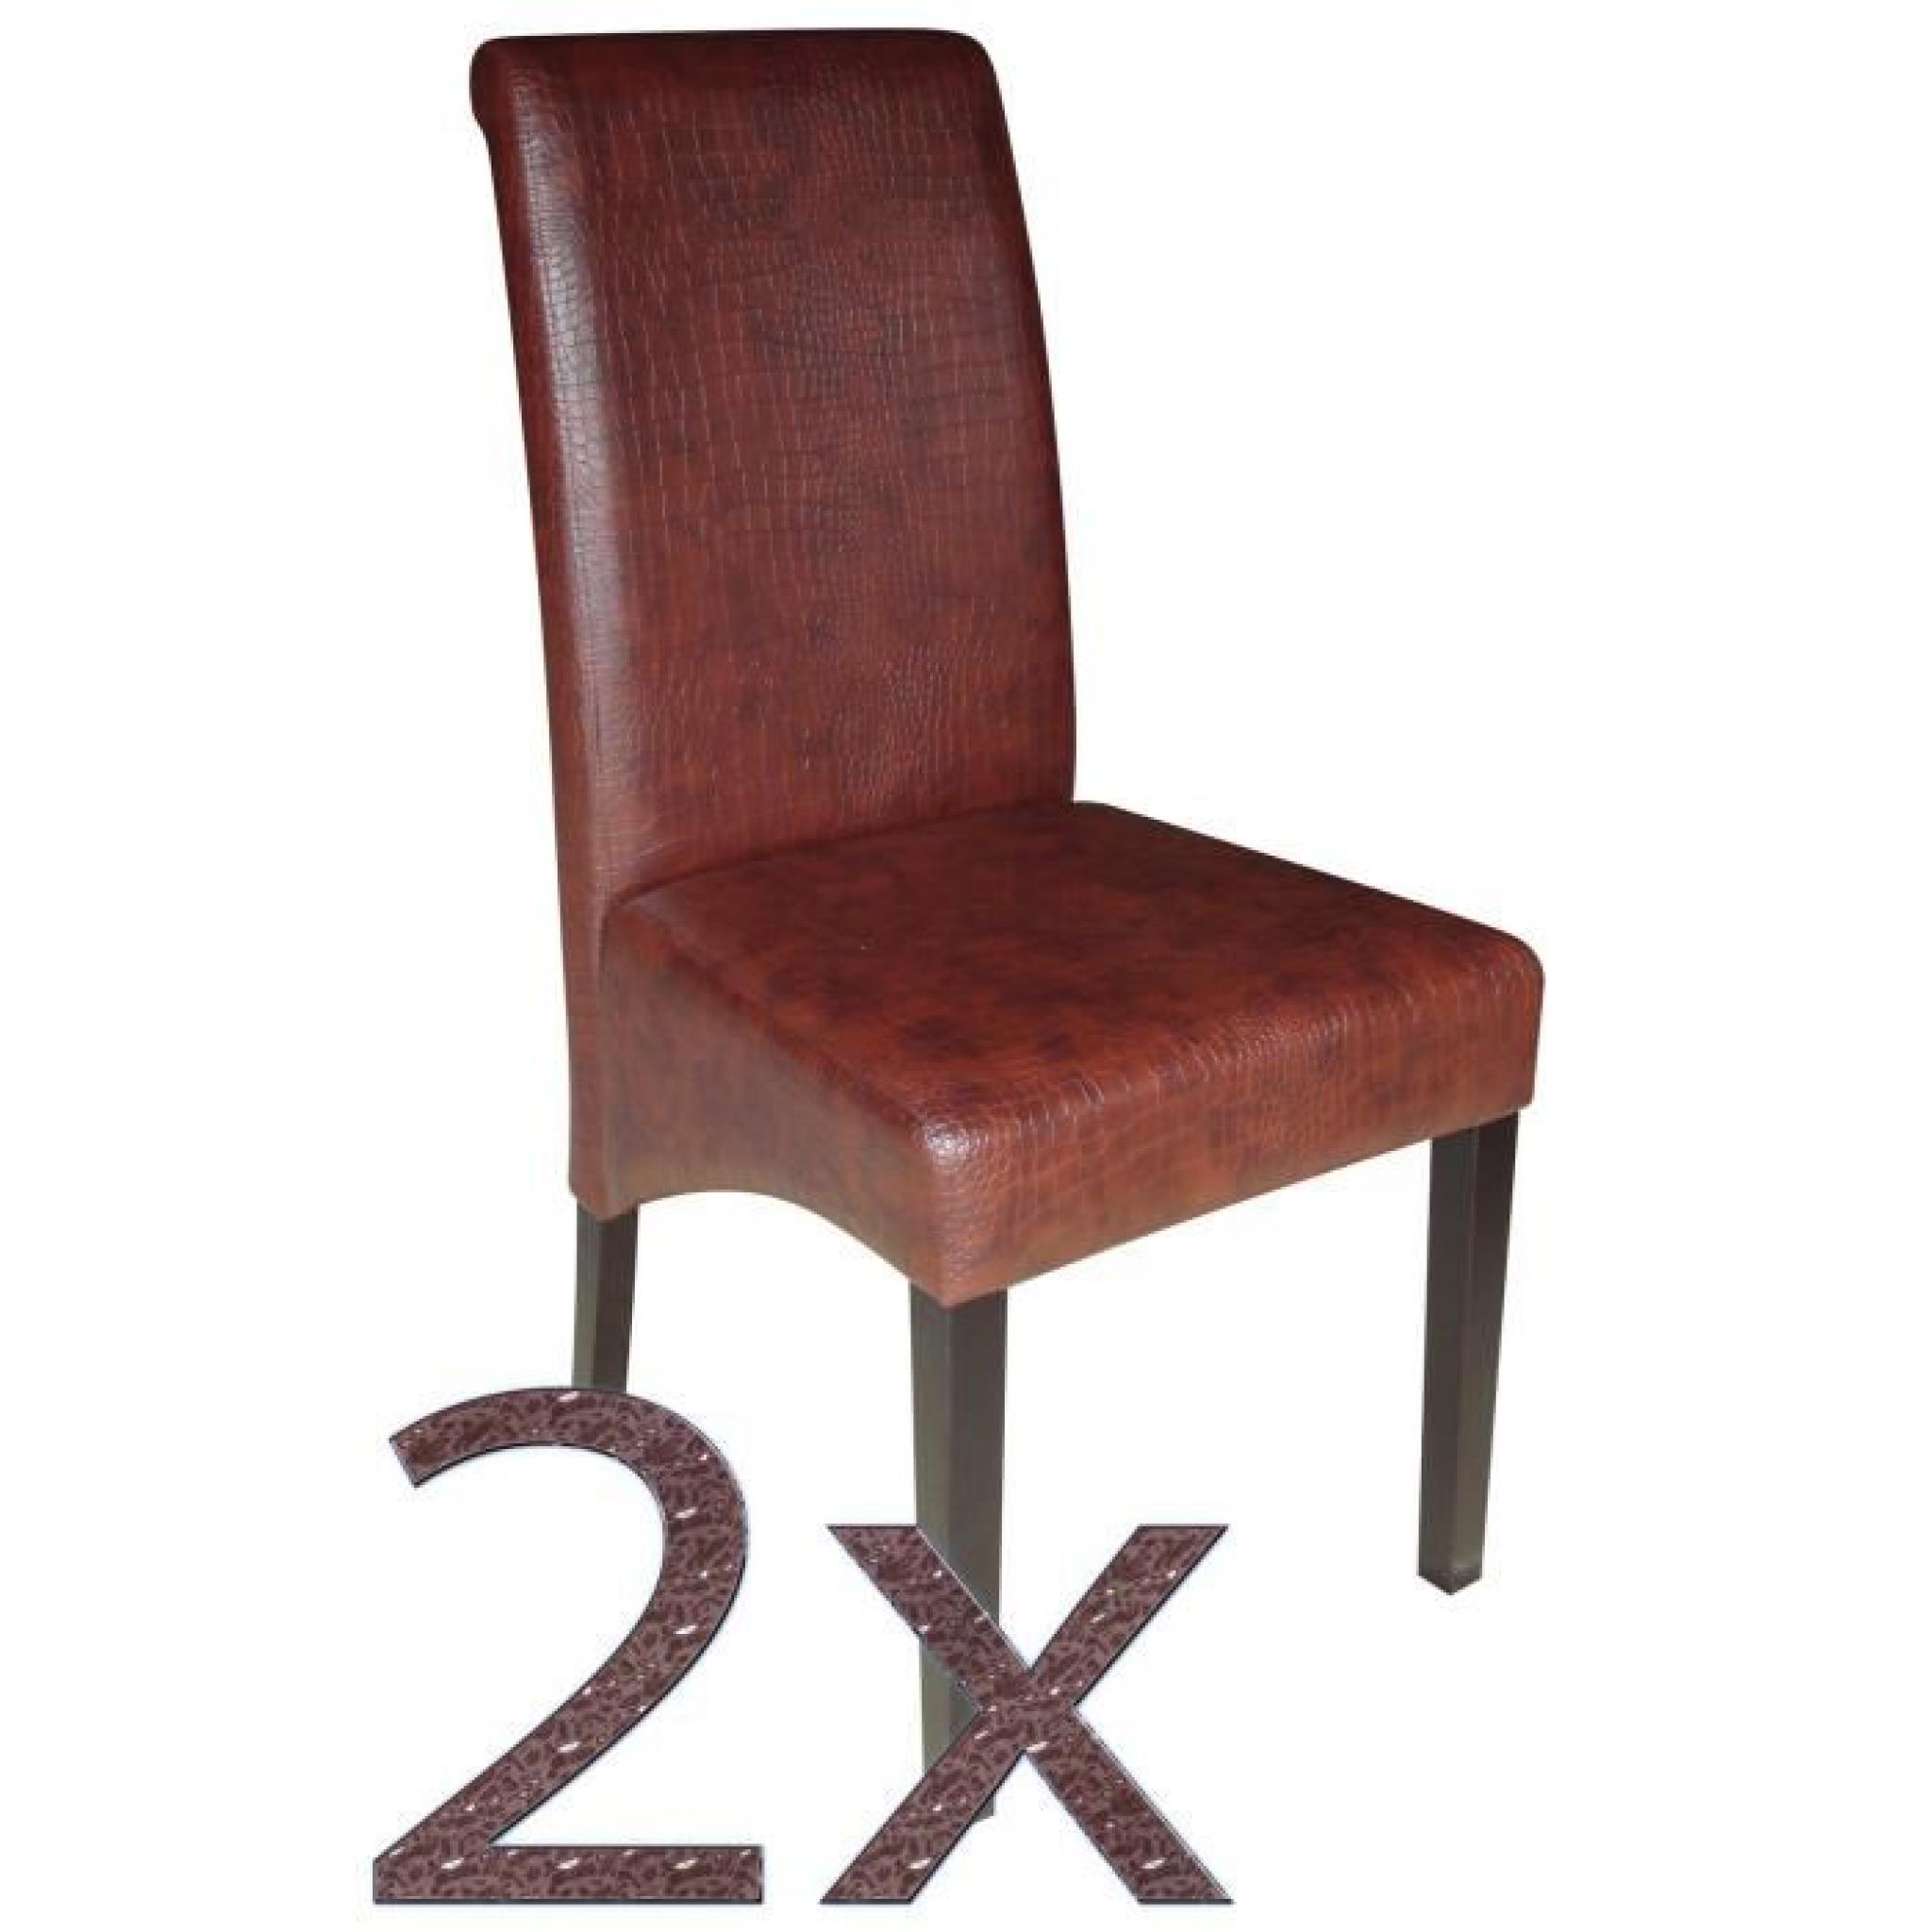 Lot de 6 chaises en PU coloris brun, forme de crocodile avec pieds en bois coloris brun foncé - Dim : H 99 x L 46 x P 50 cm pas cher